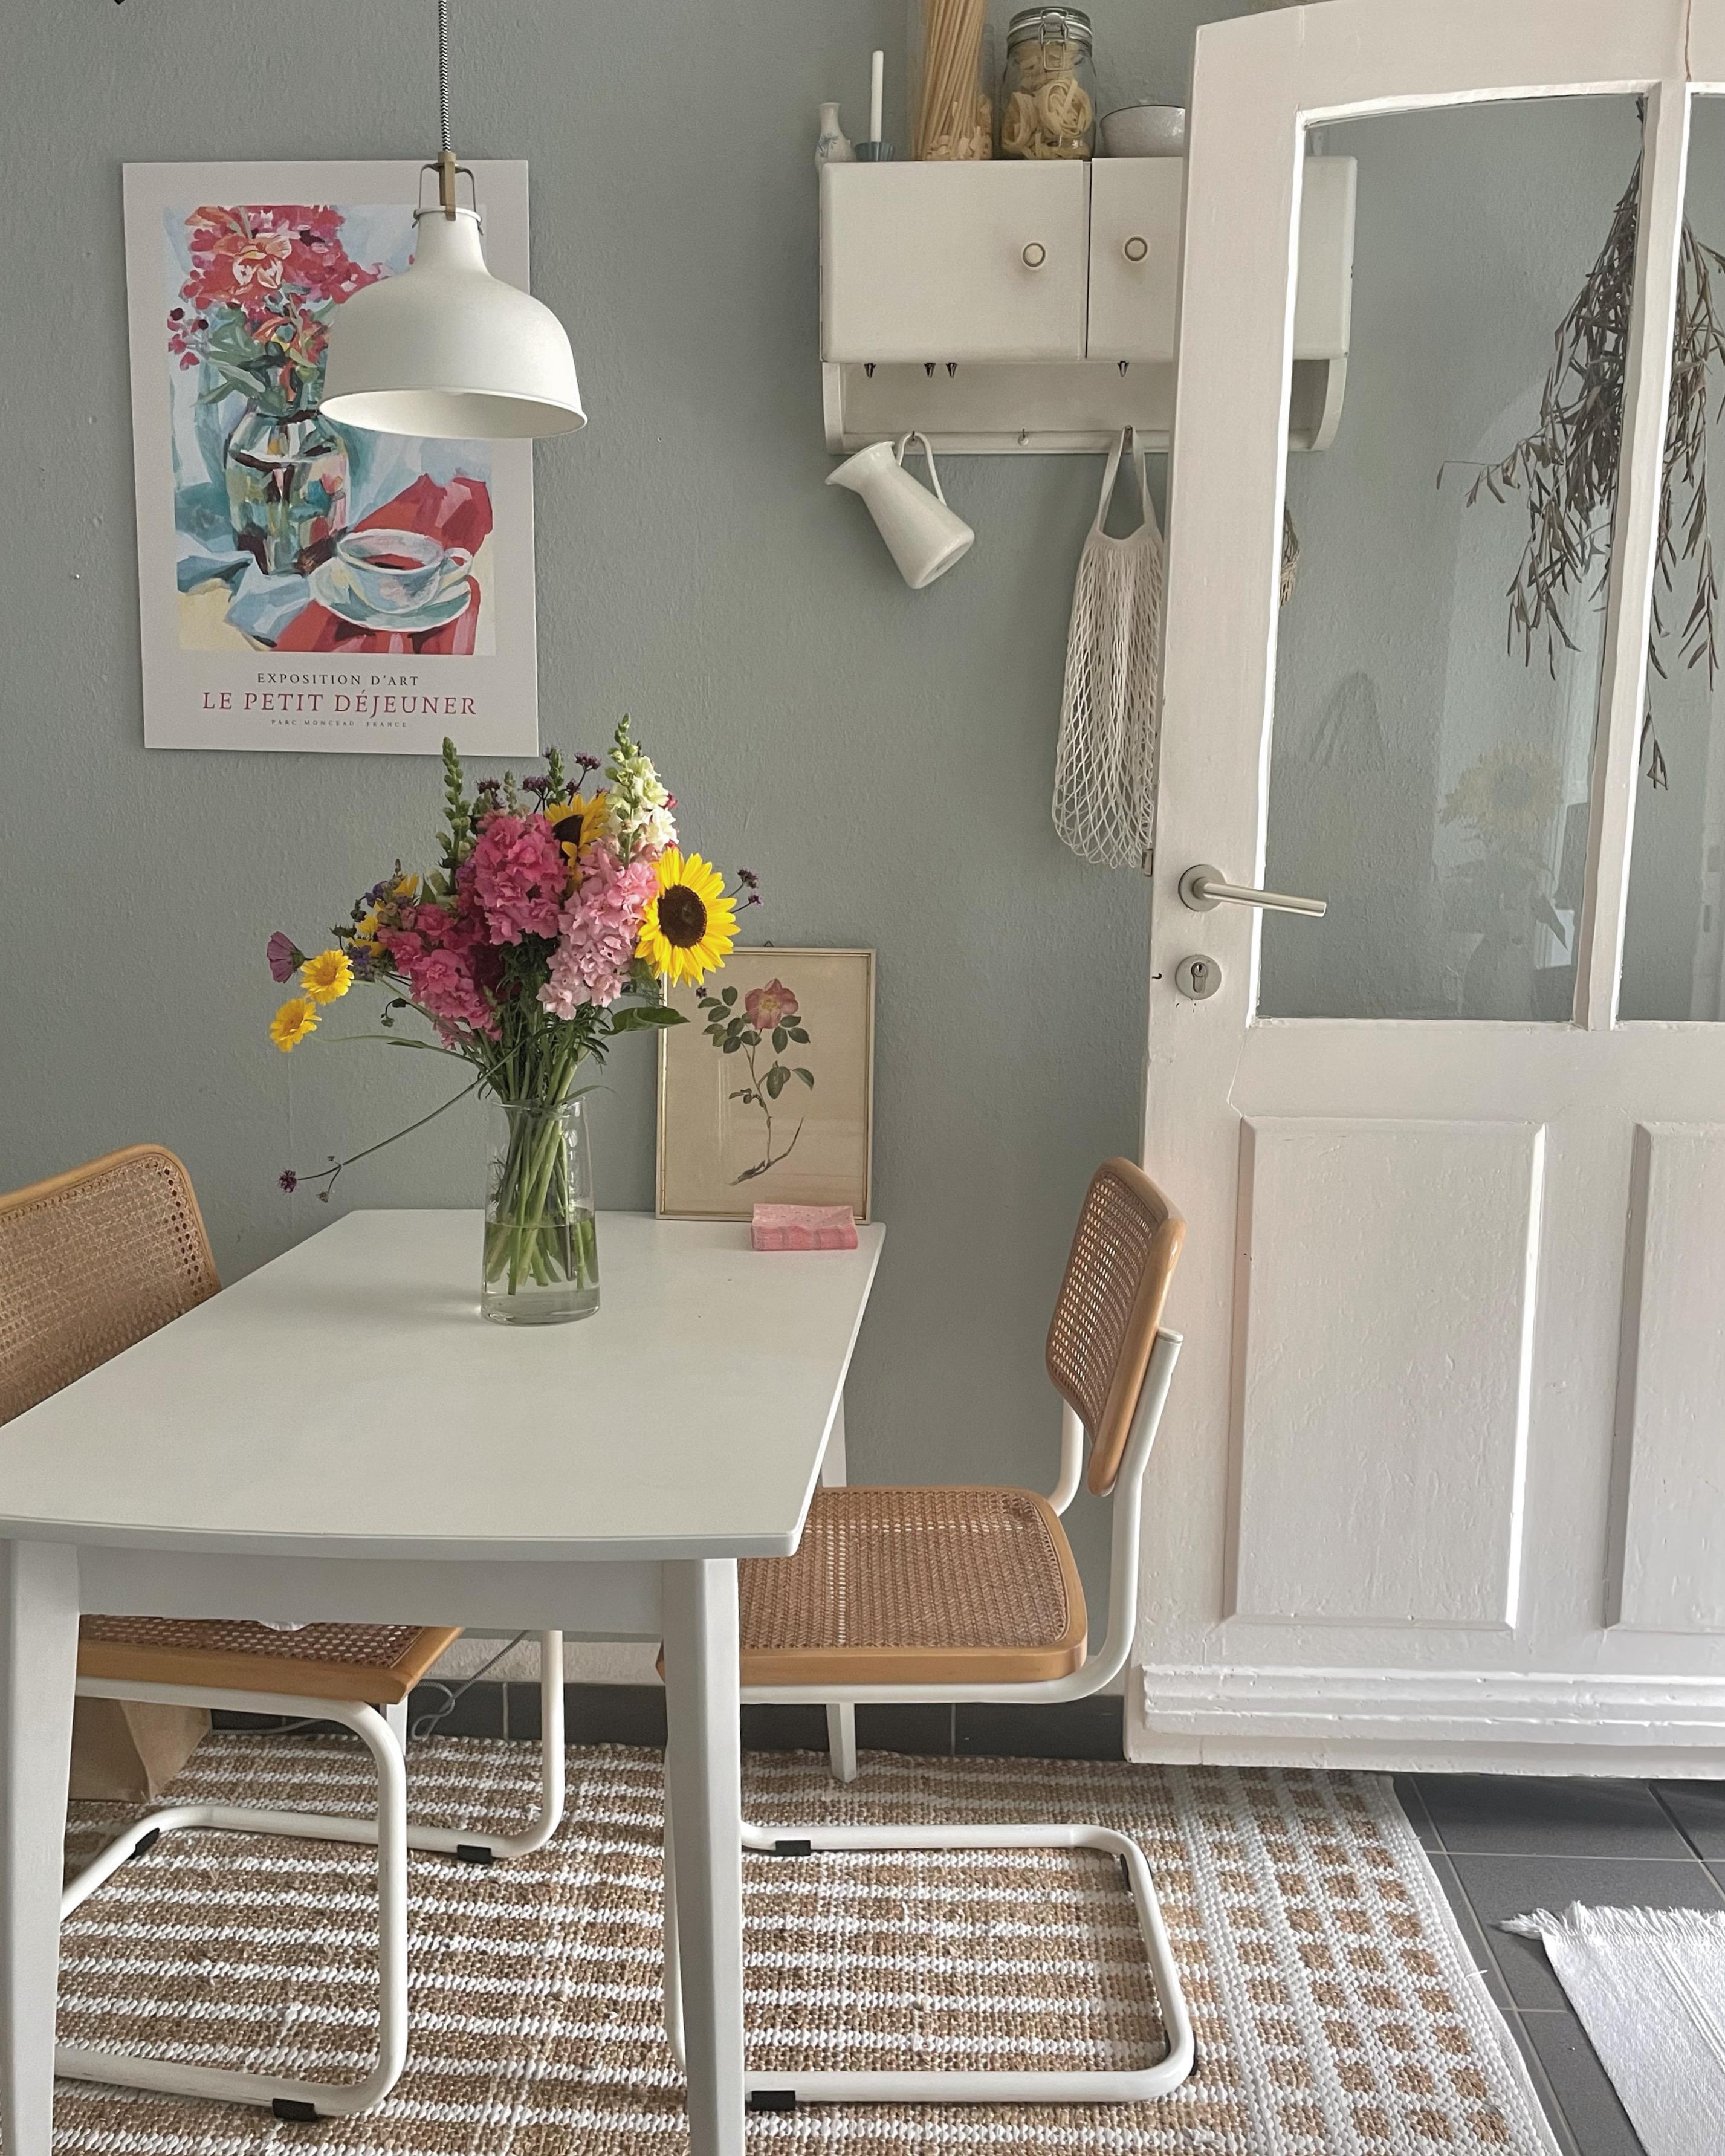 Pastellfarben sind voll mein Ding - und Blumen natürlich auch! #Küche #couchstyle #Blumen